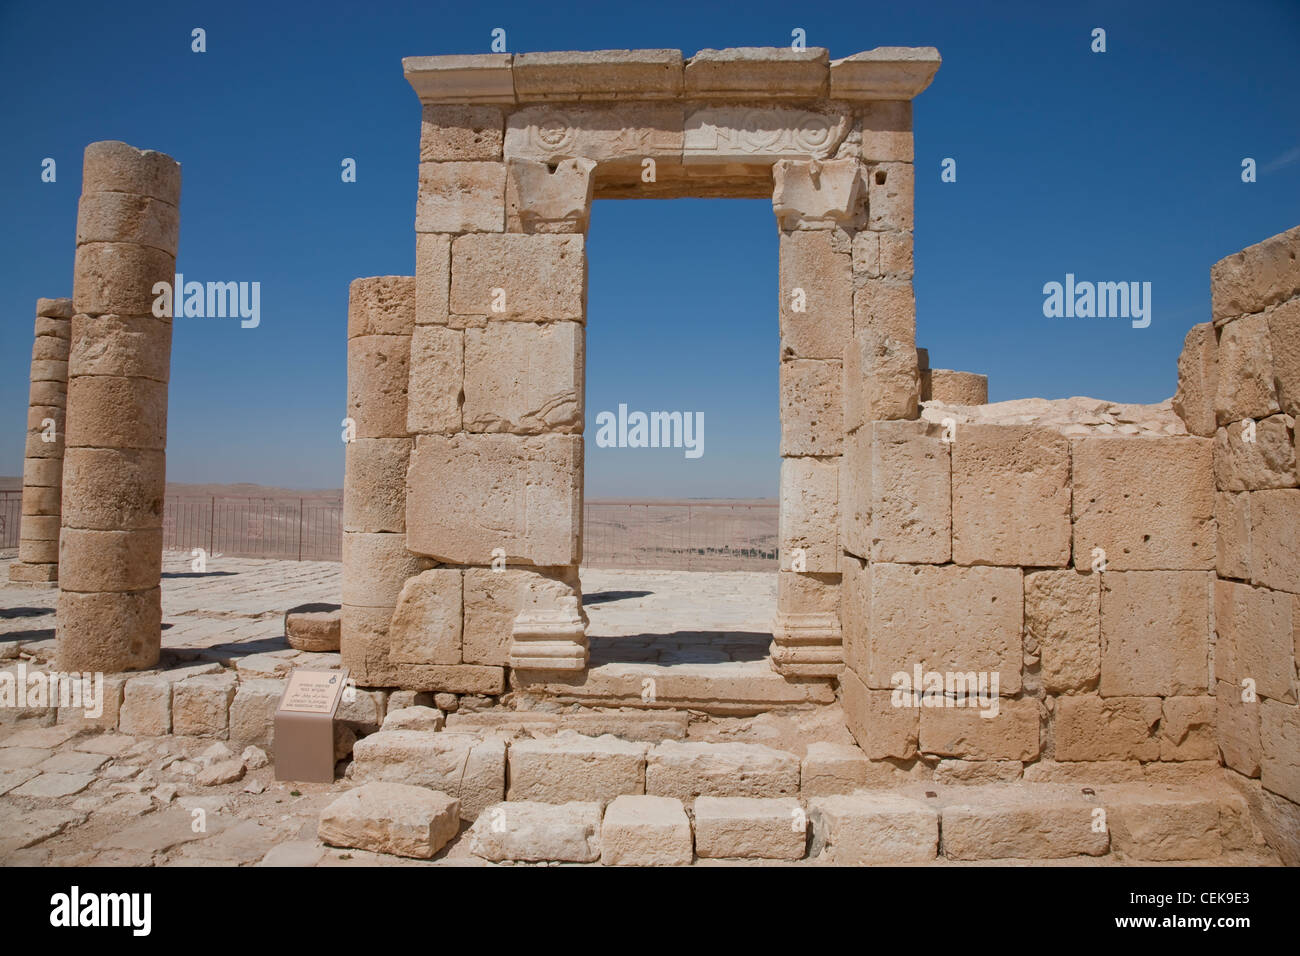 Avdat Nabatei fondata nel IV secolo A.C. stazione lungo 'incenso Spice Route' Orient coste mediterranee in 106 ad Avdat Foto Stock